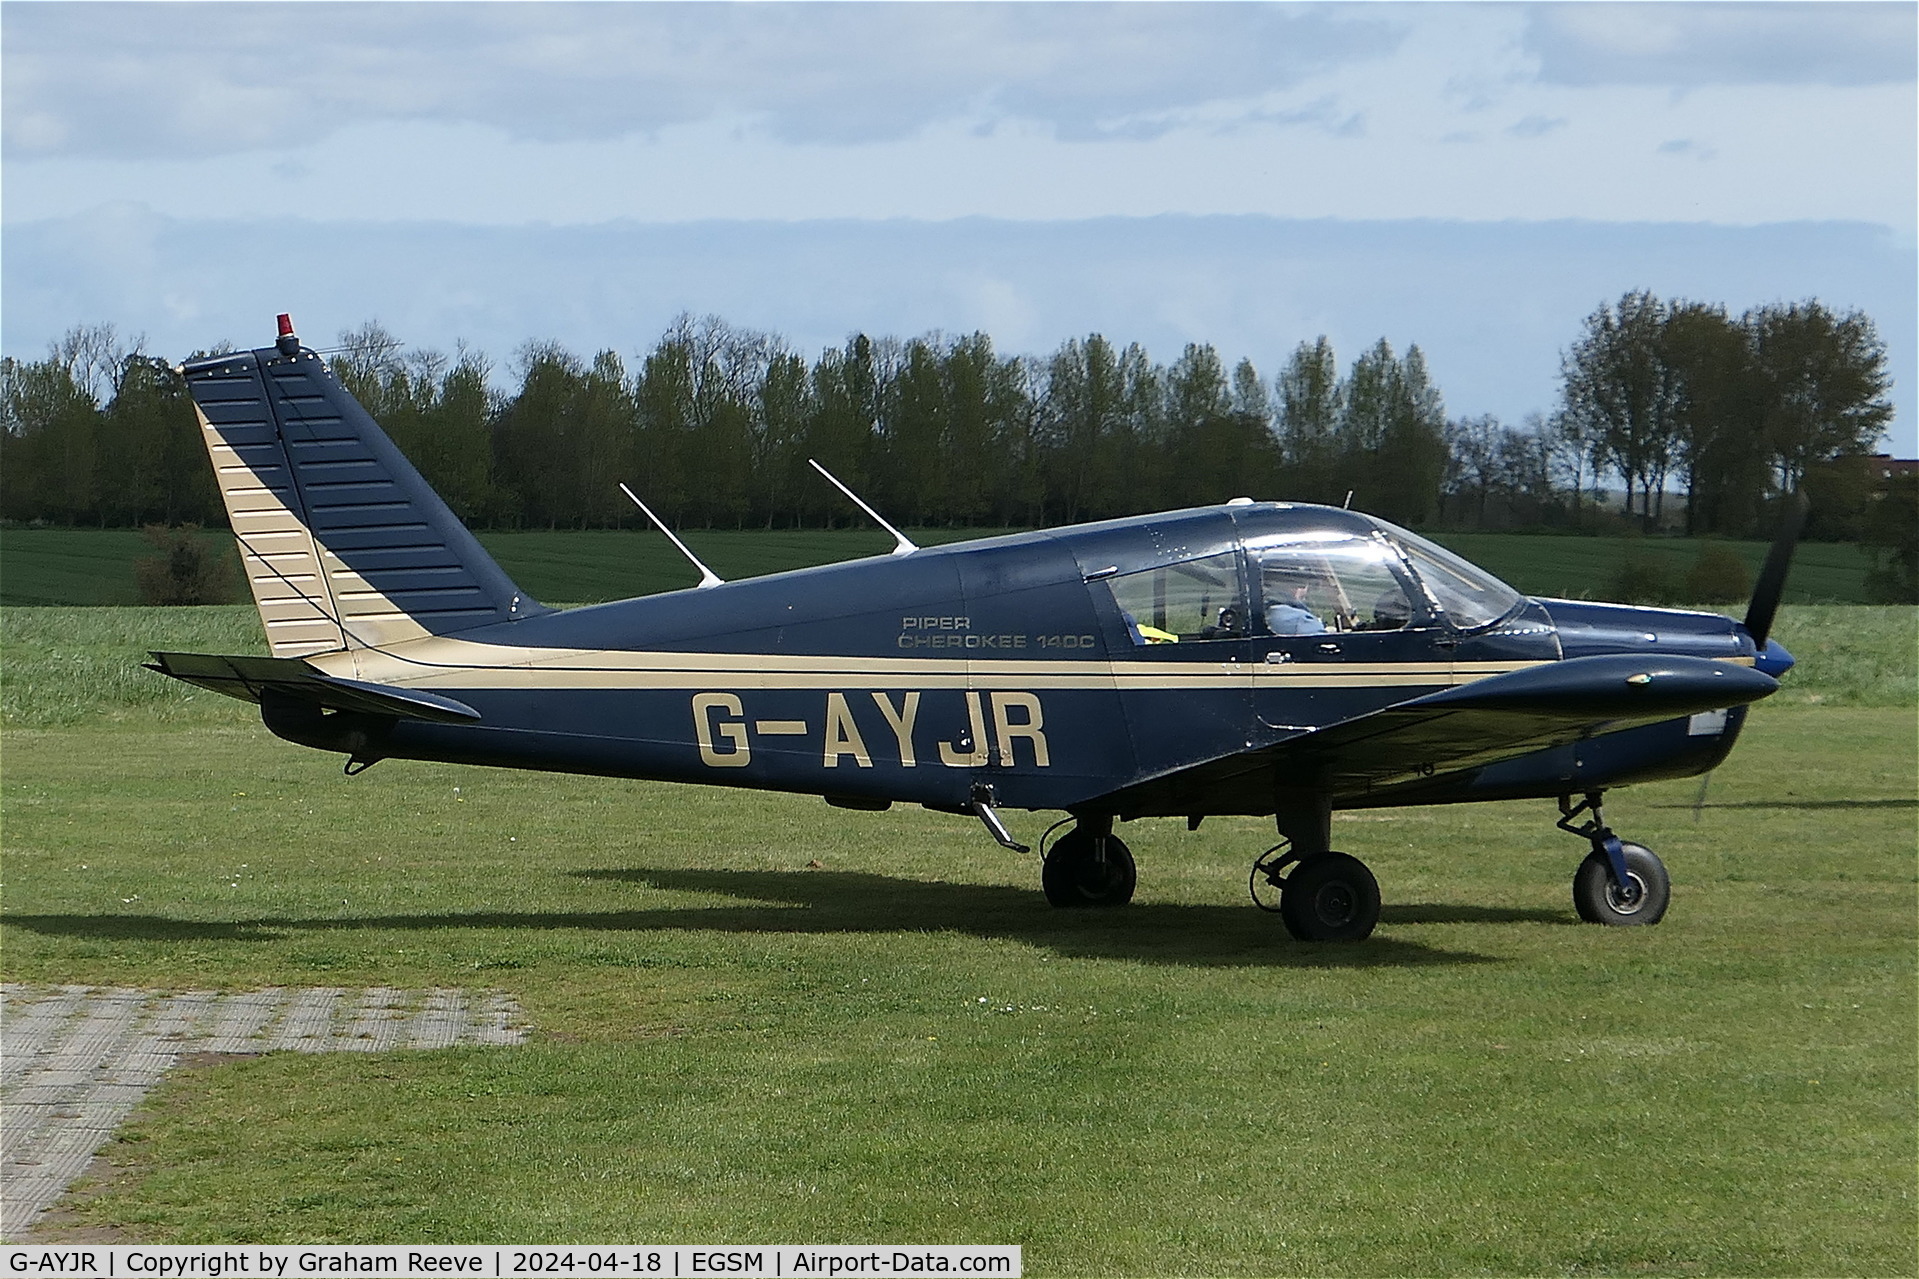 G-AYJR, 1970 Piper PA-28-140 Cherokee C/N 28-26694, Just landed at Beccles